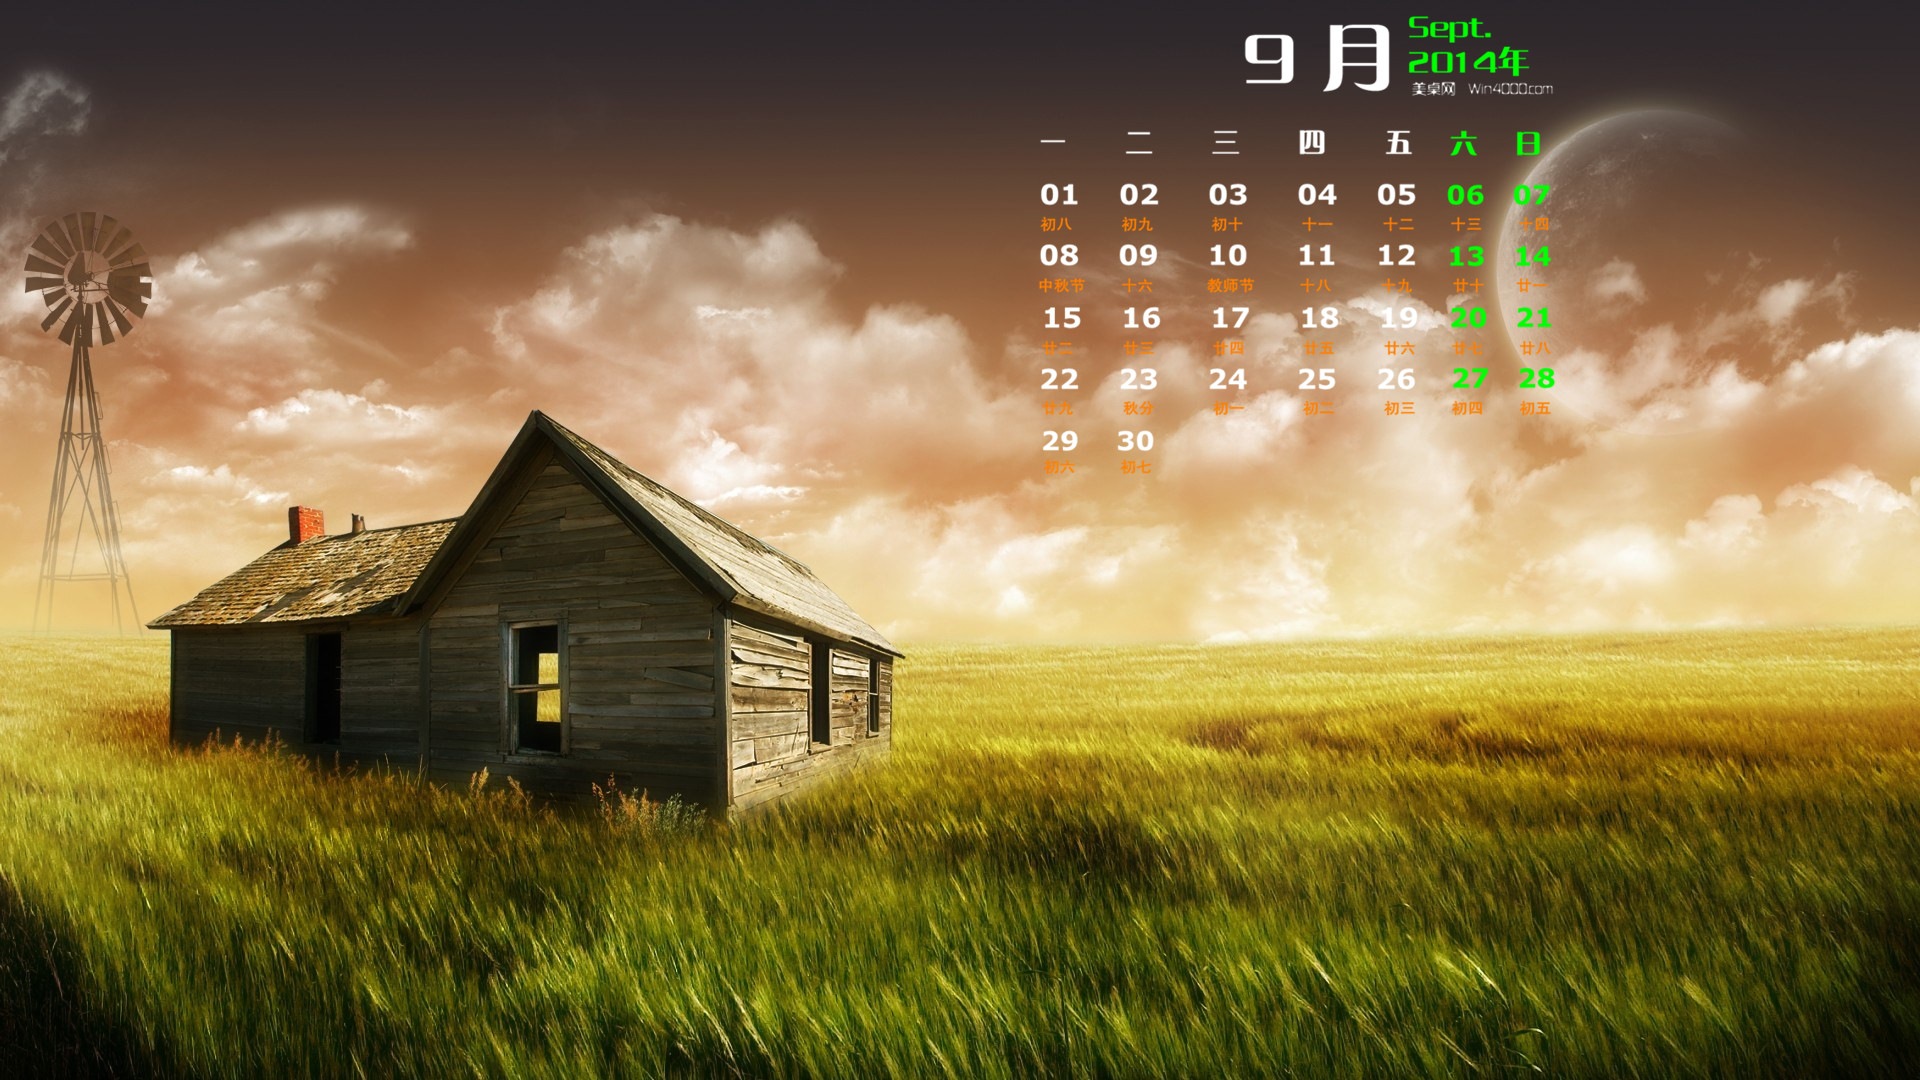 September 2014 Kalender Tapete (1) #12 - 1920x1080